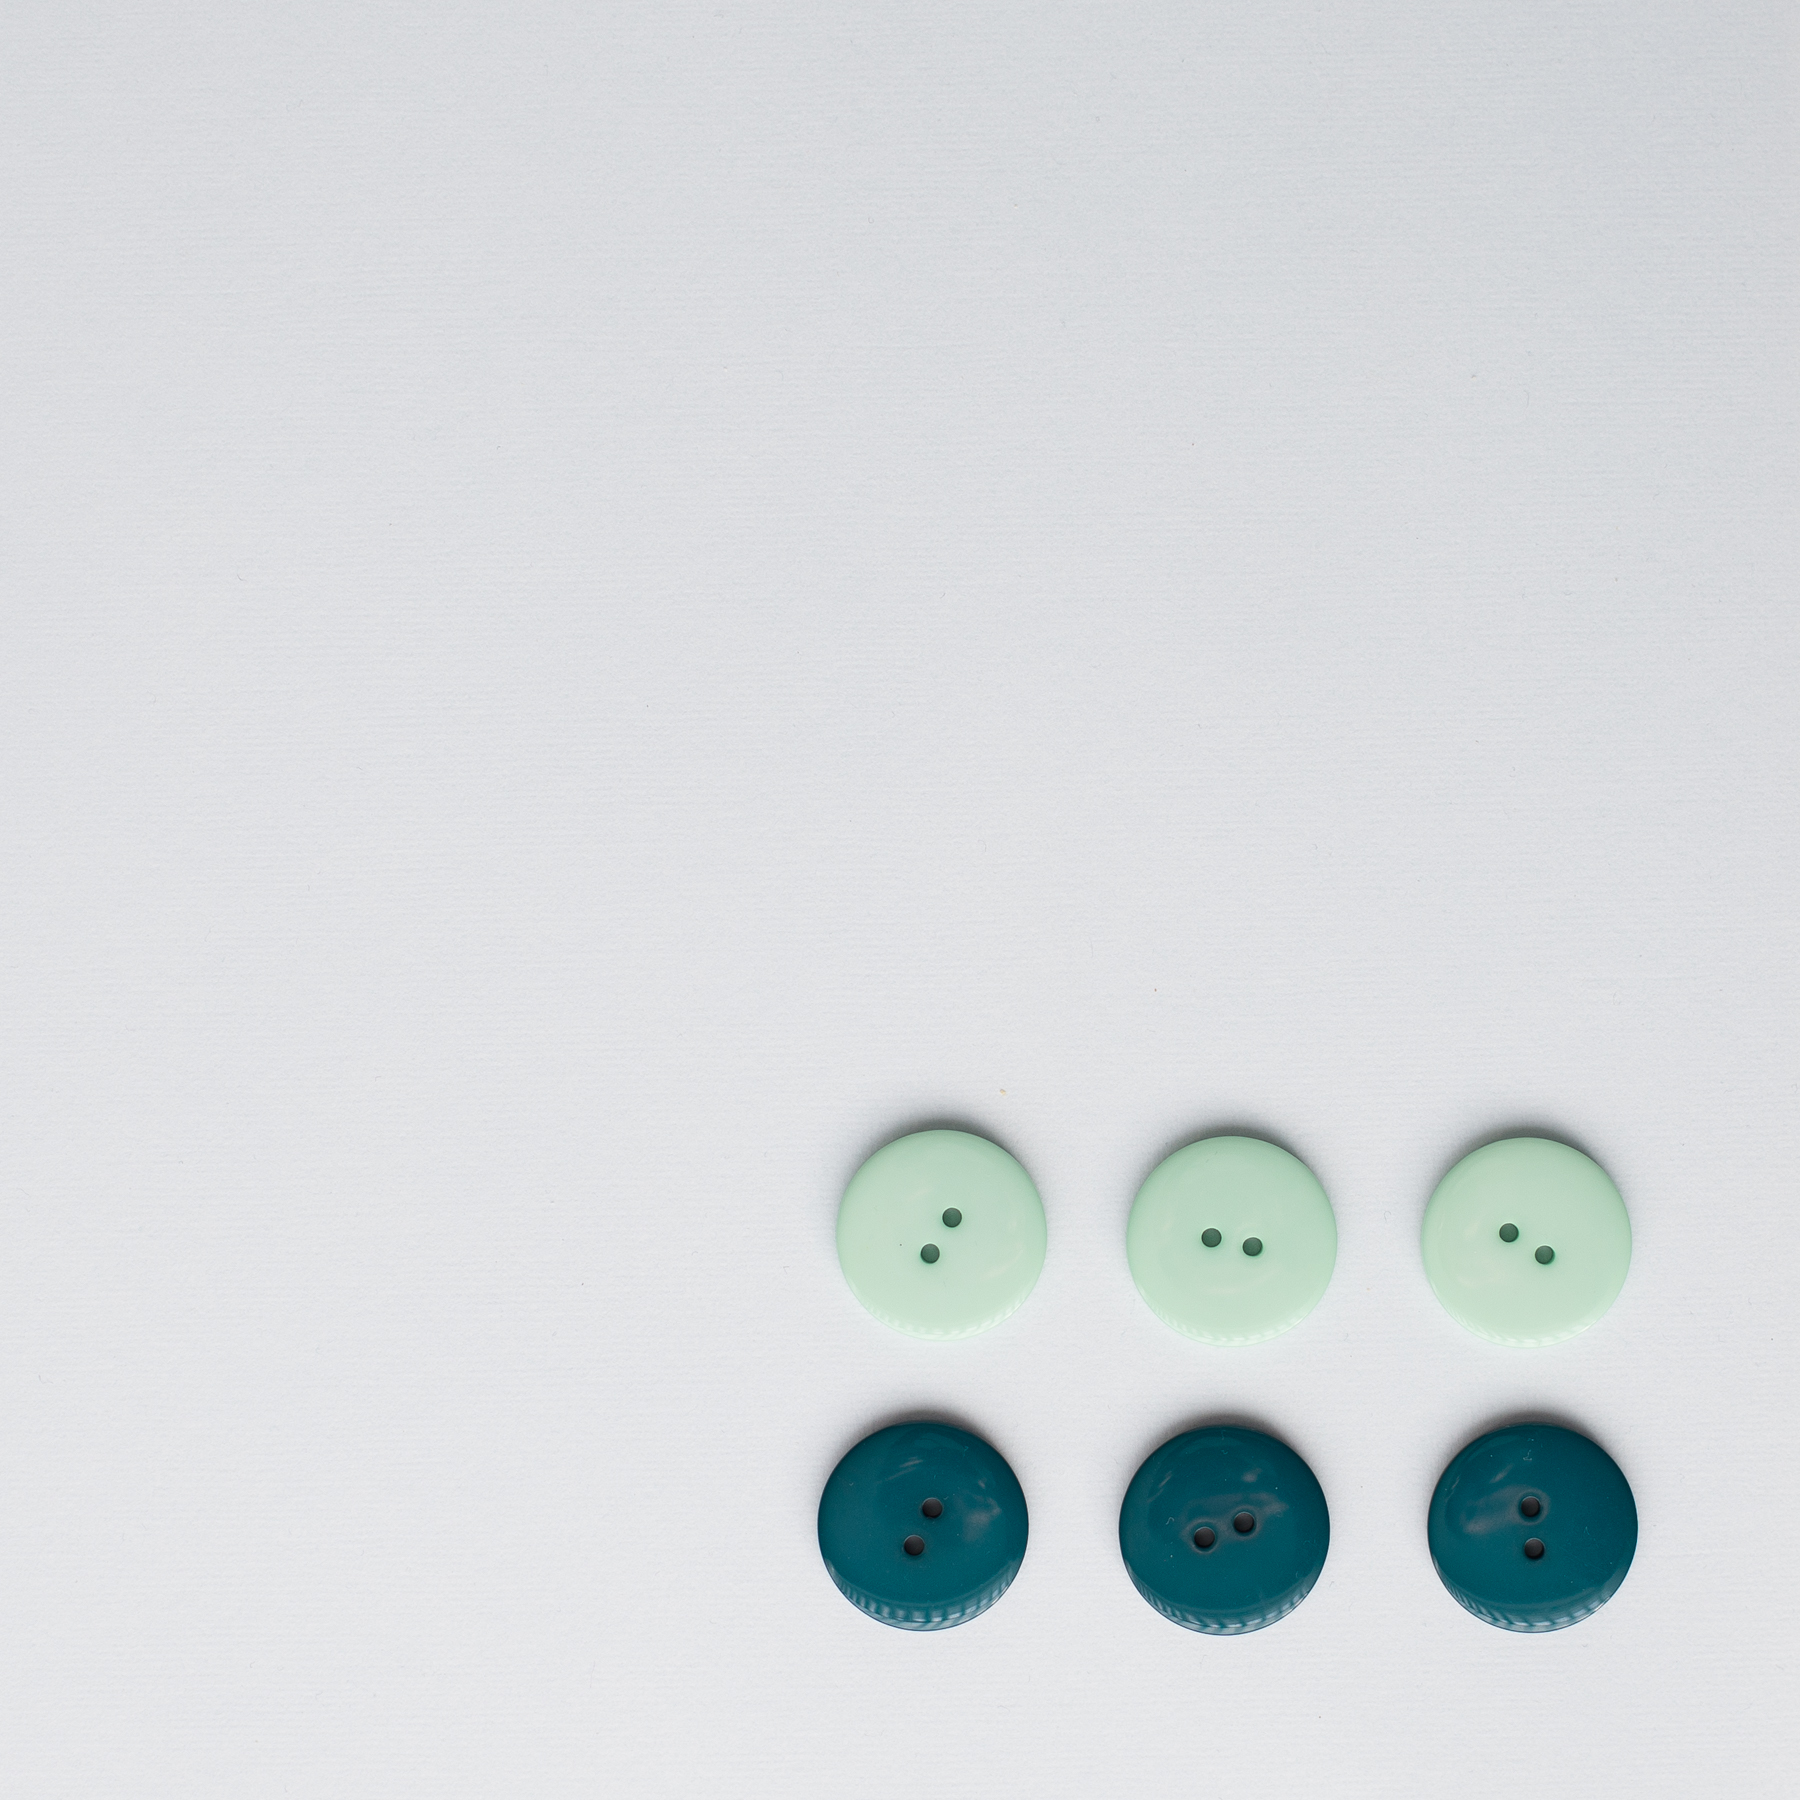  - Dark green plastic button | Medium | 23 mm | Round plastic button - 28/03/2018